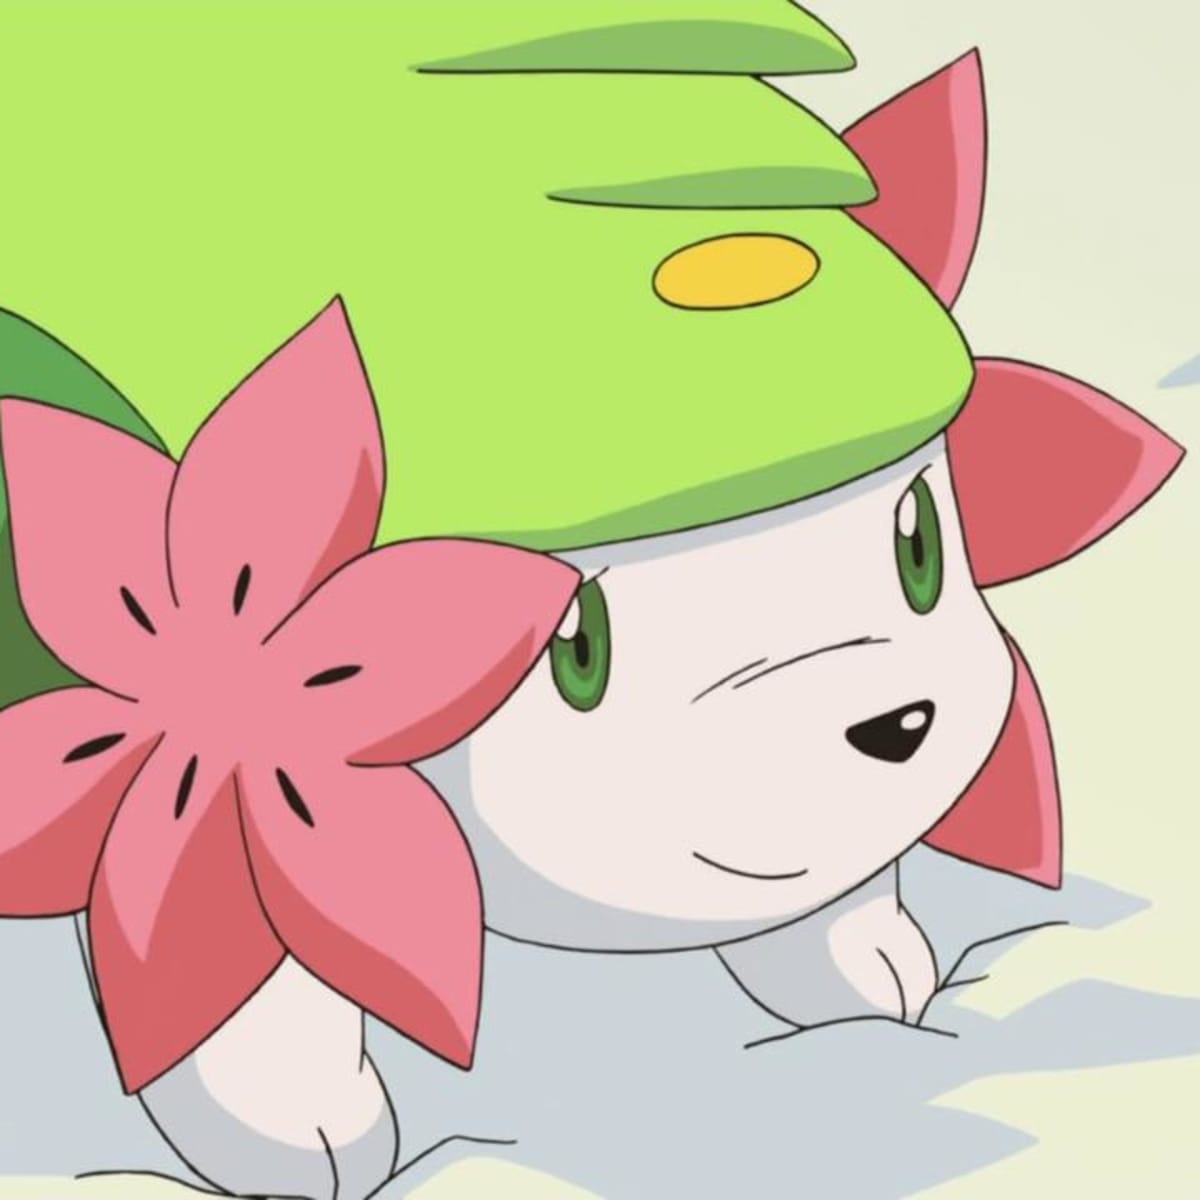 Shaymin grátis no Pokémon GO em abril de 2023